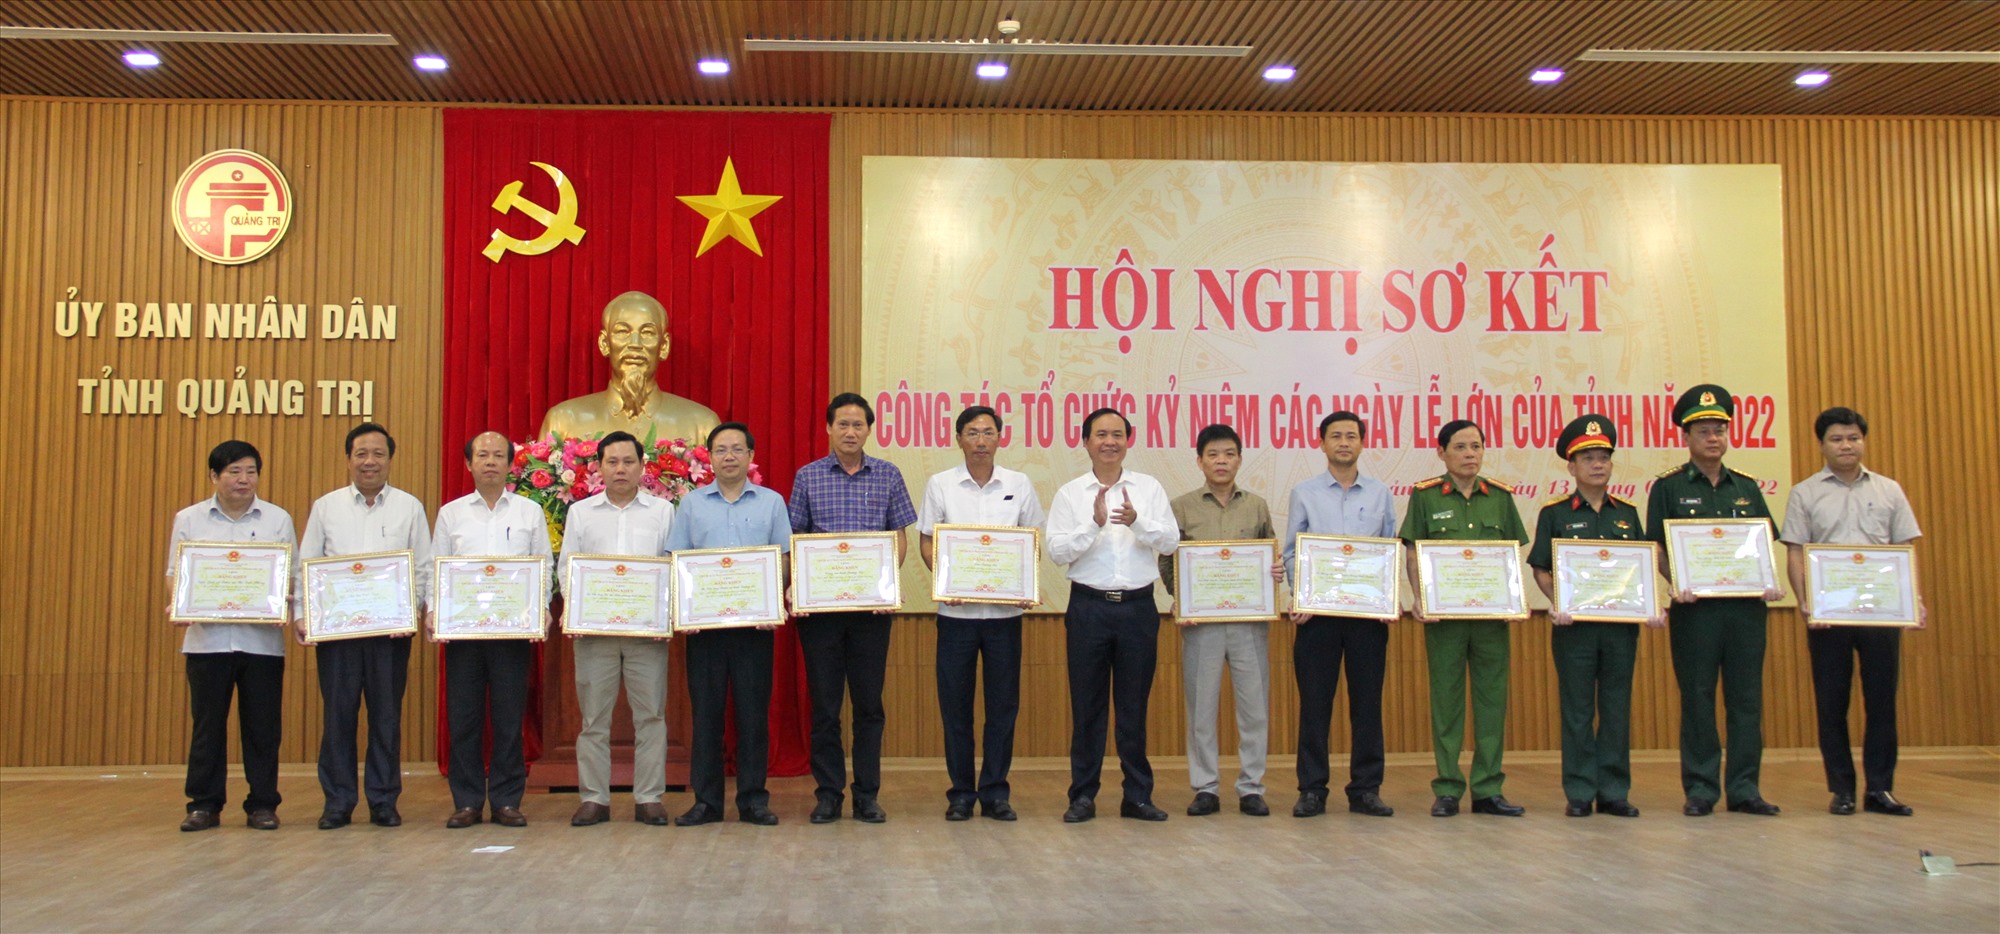 Chủ tịch UBND tỉnh Võ Văn Hưng tặng bằng khen cho các tập thể có nhiều thành tích trong tham gia tổ chức hoạt động kỷ niệm các ngày lễ lớn của tỉnh năm 2022- Ảnh: MĐ